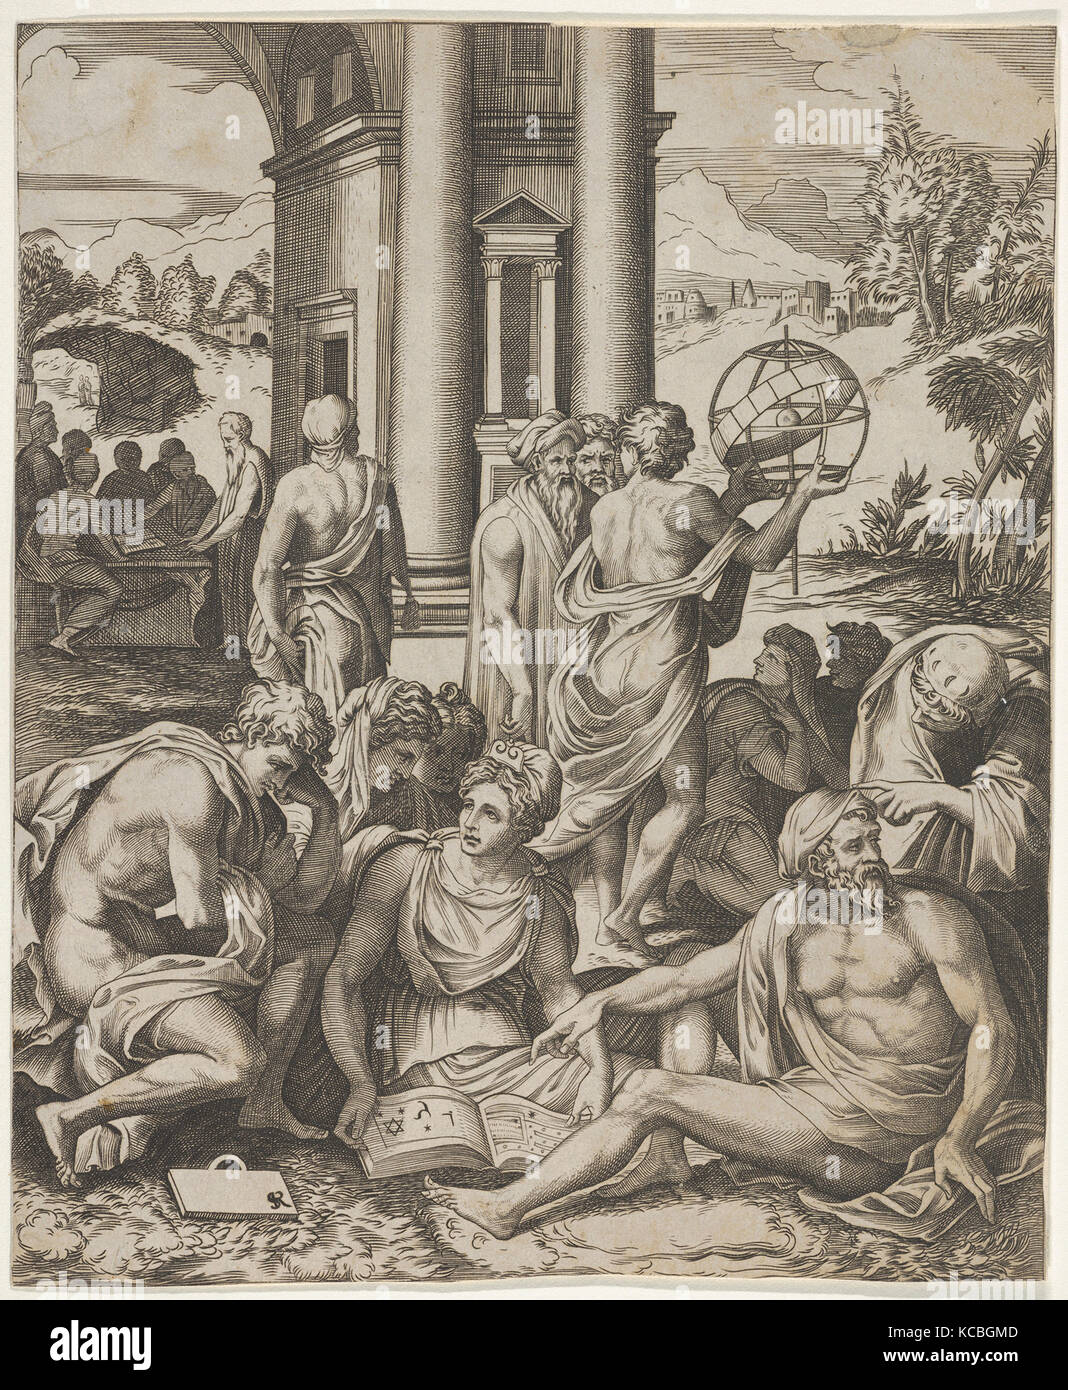 Assemblaggio del maschio e femmina di studiosi riuniti intorno a un libro aperto, nella terra di mezzo un uomo detiene aloft una sfera armillare Foto Stock